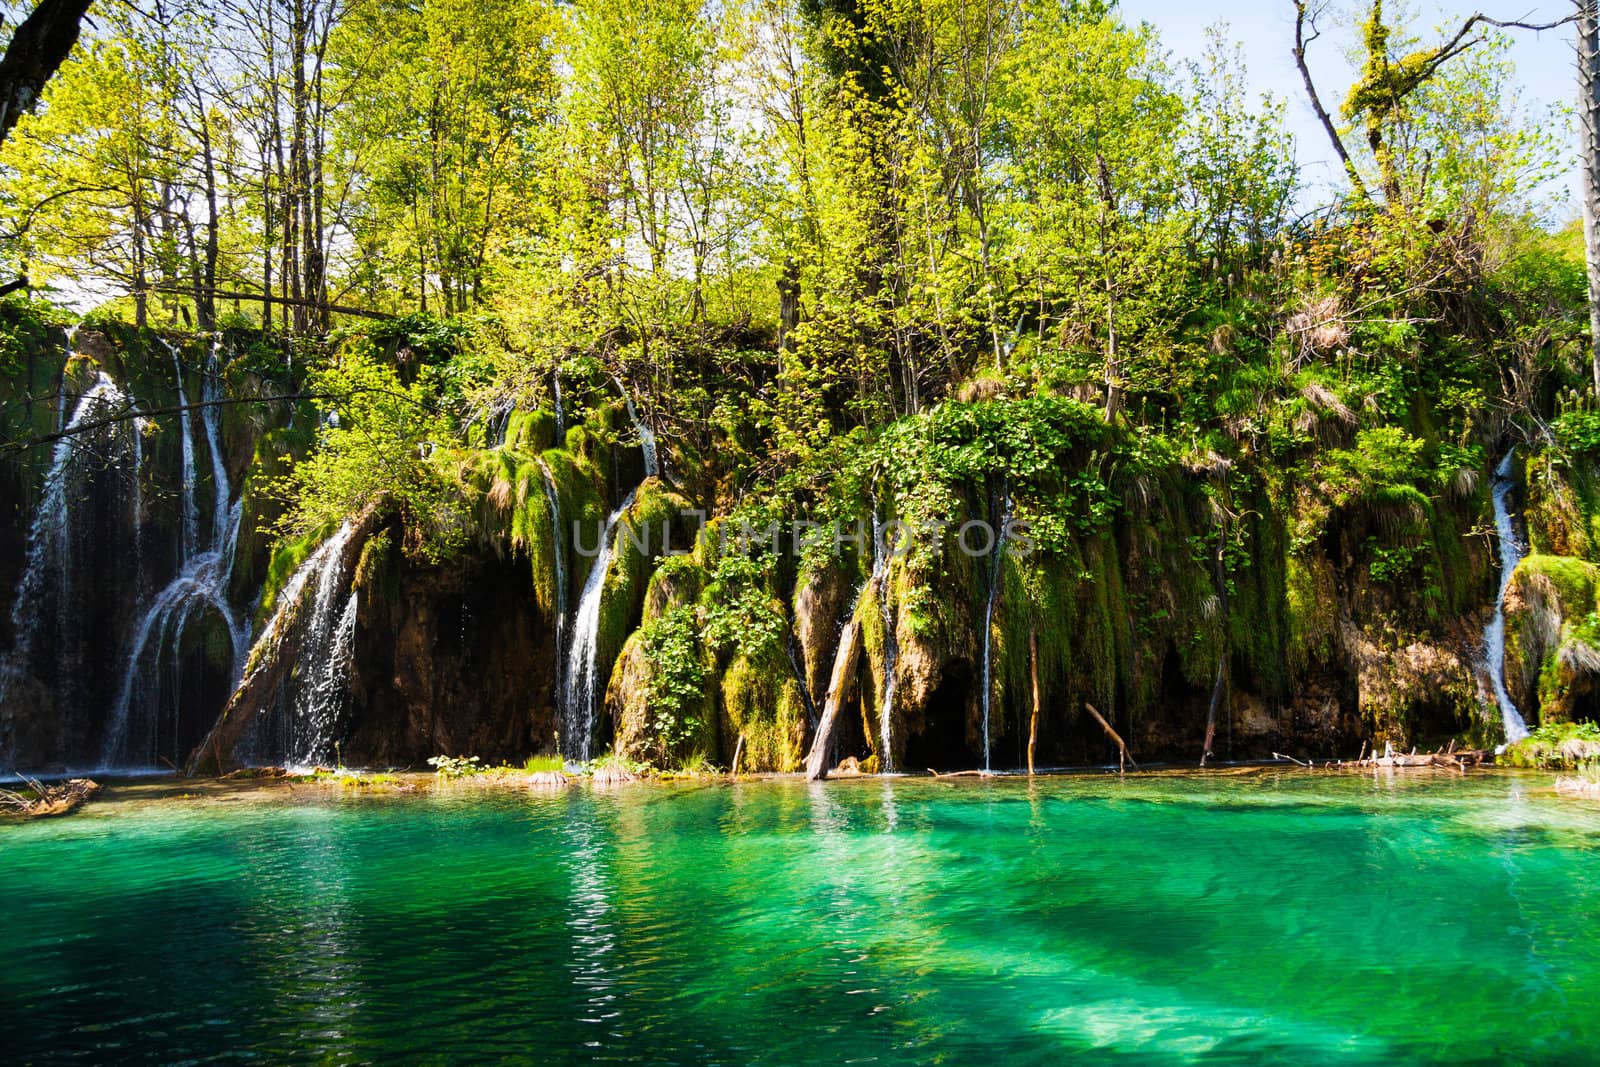 Green lake with waterfalls, shot at Plitvice lakes national park, Croatia.